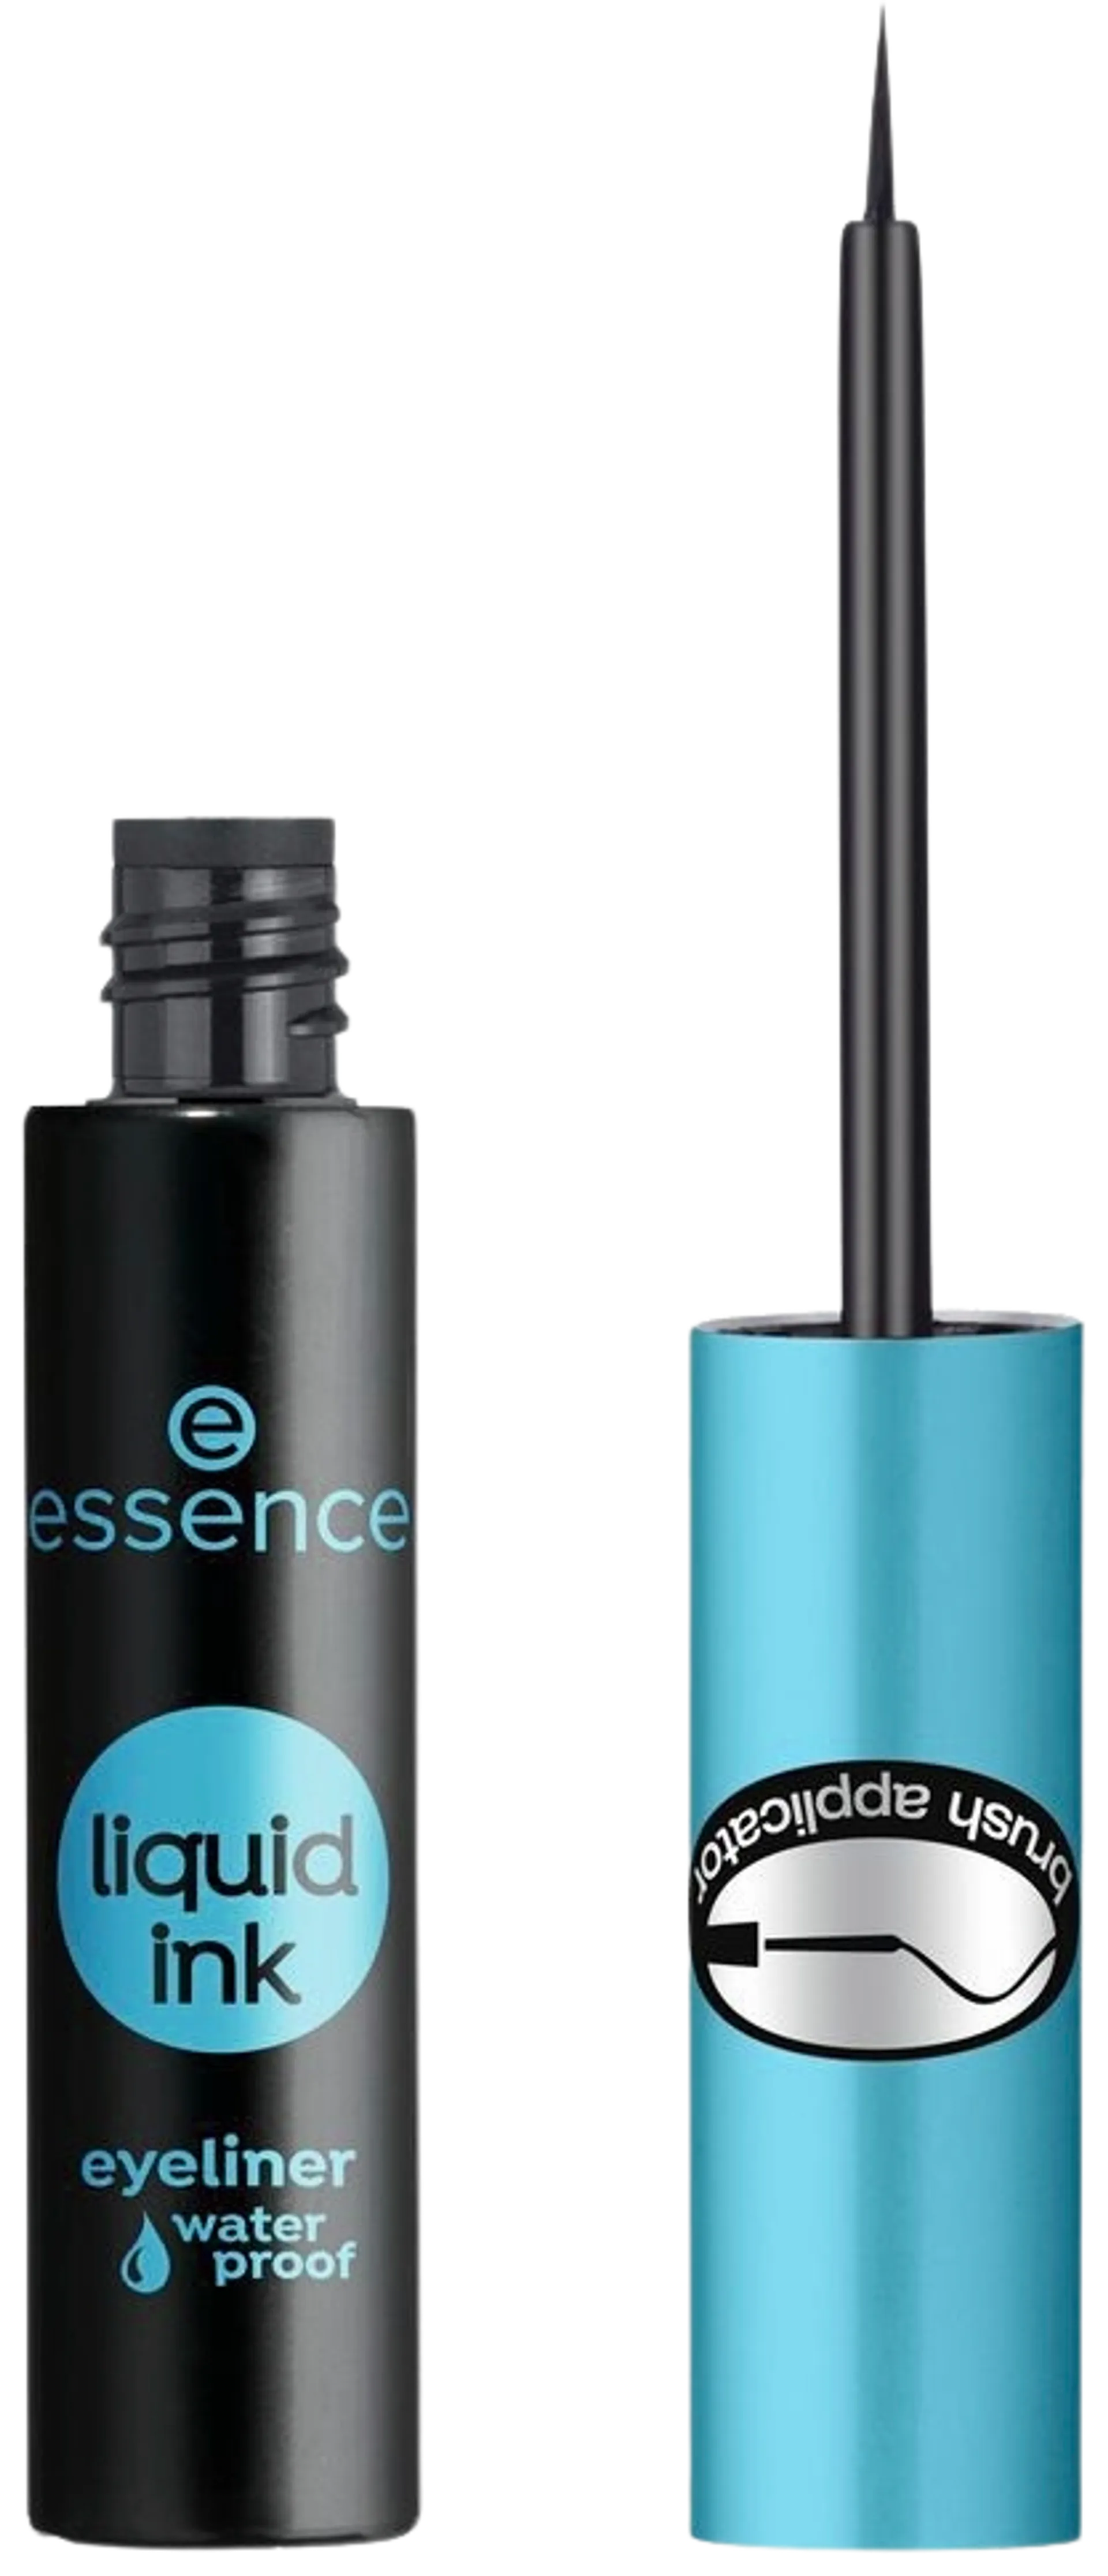 essence liquid ink eyeliner waterproof vedenkestävä nestemäinen rajausväri 3 ml - 1